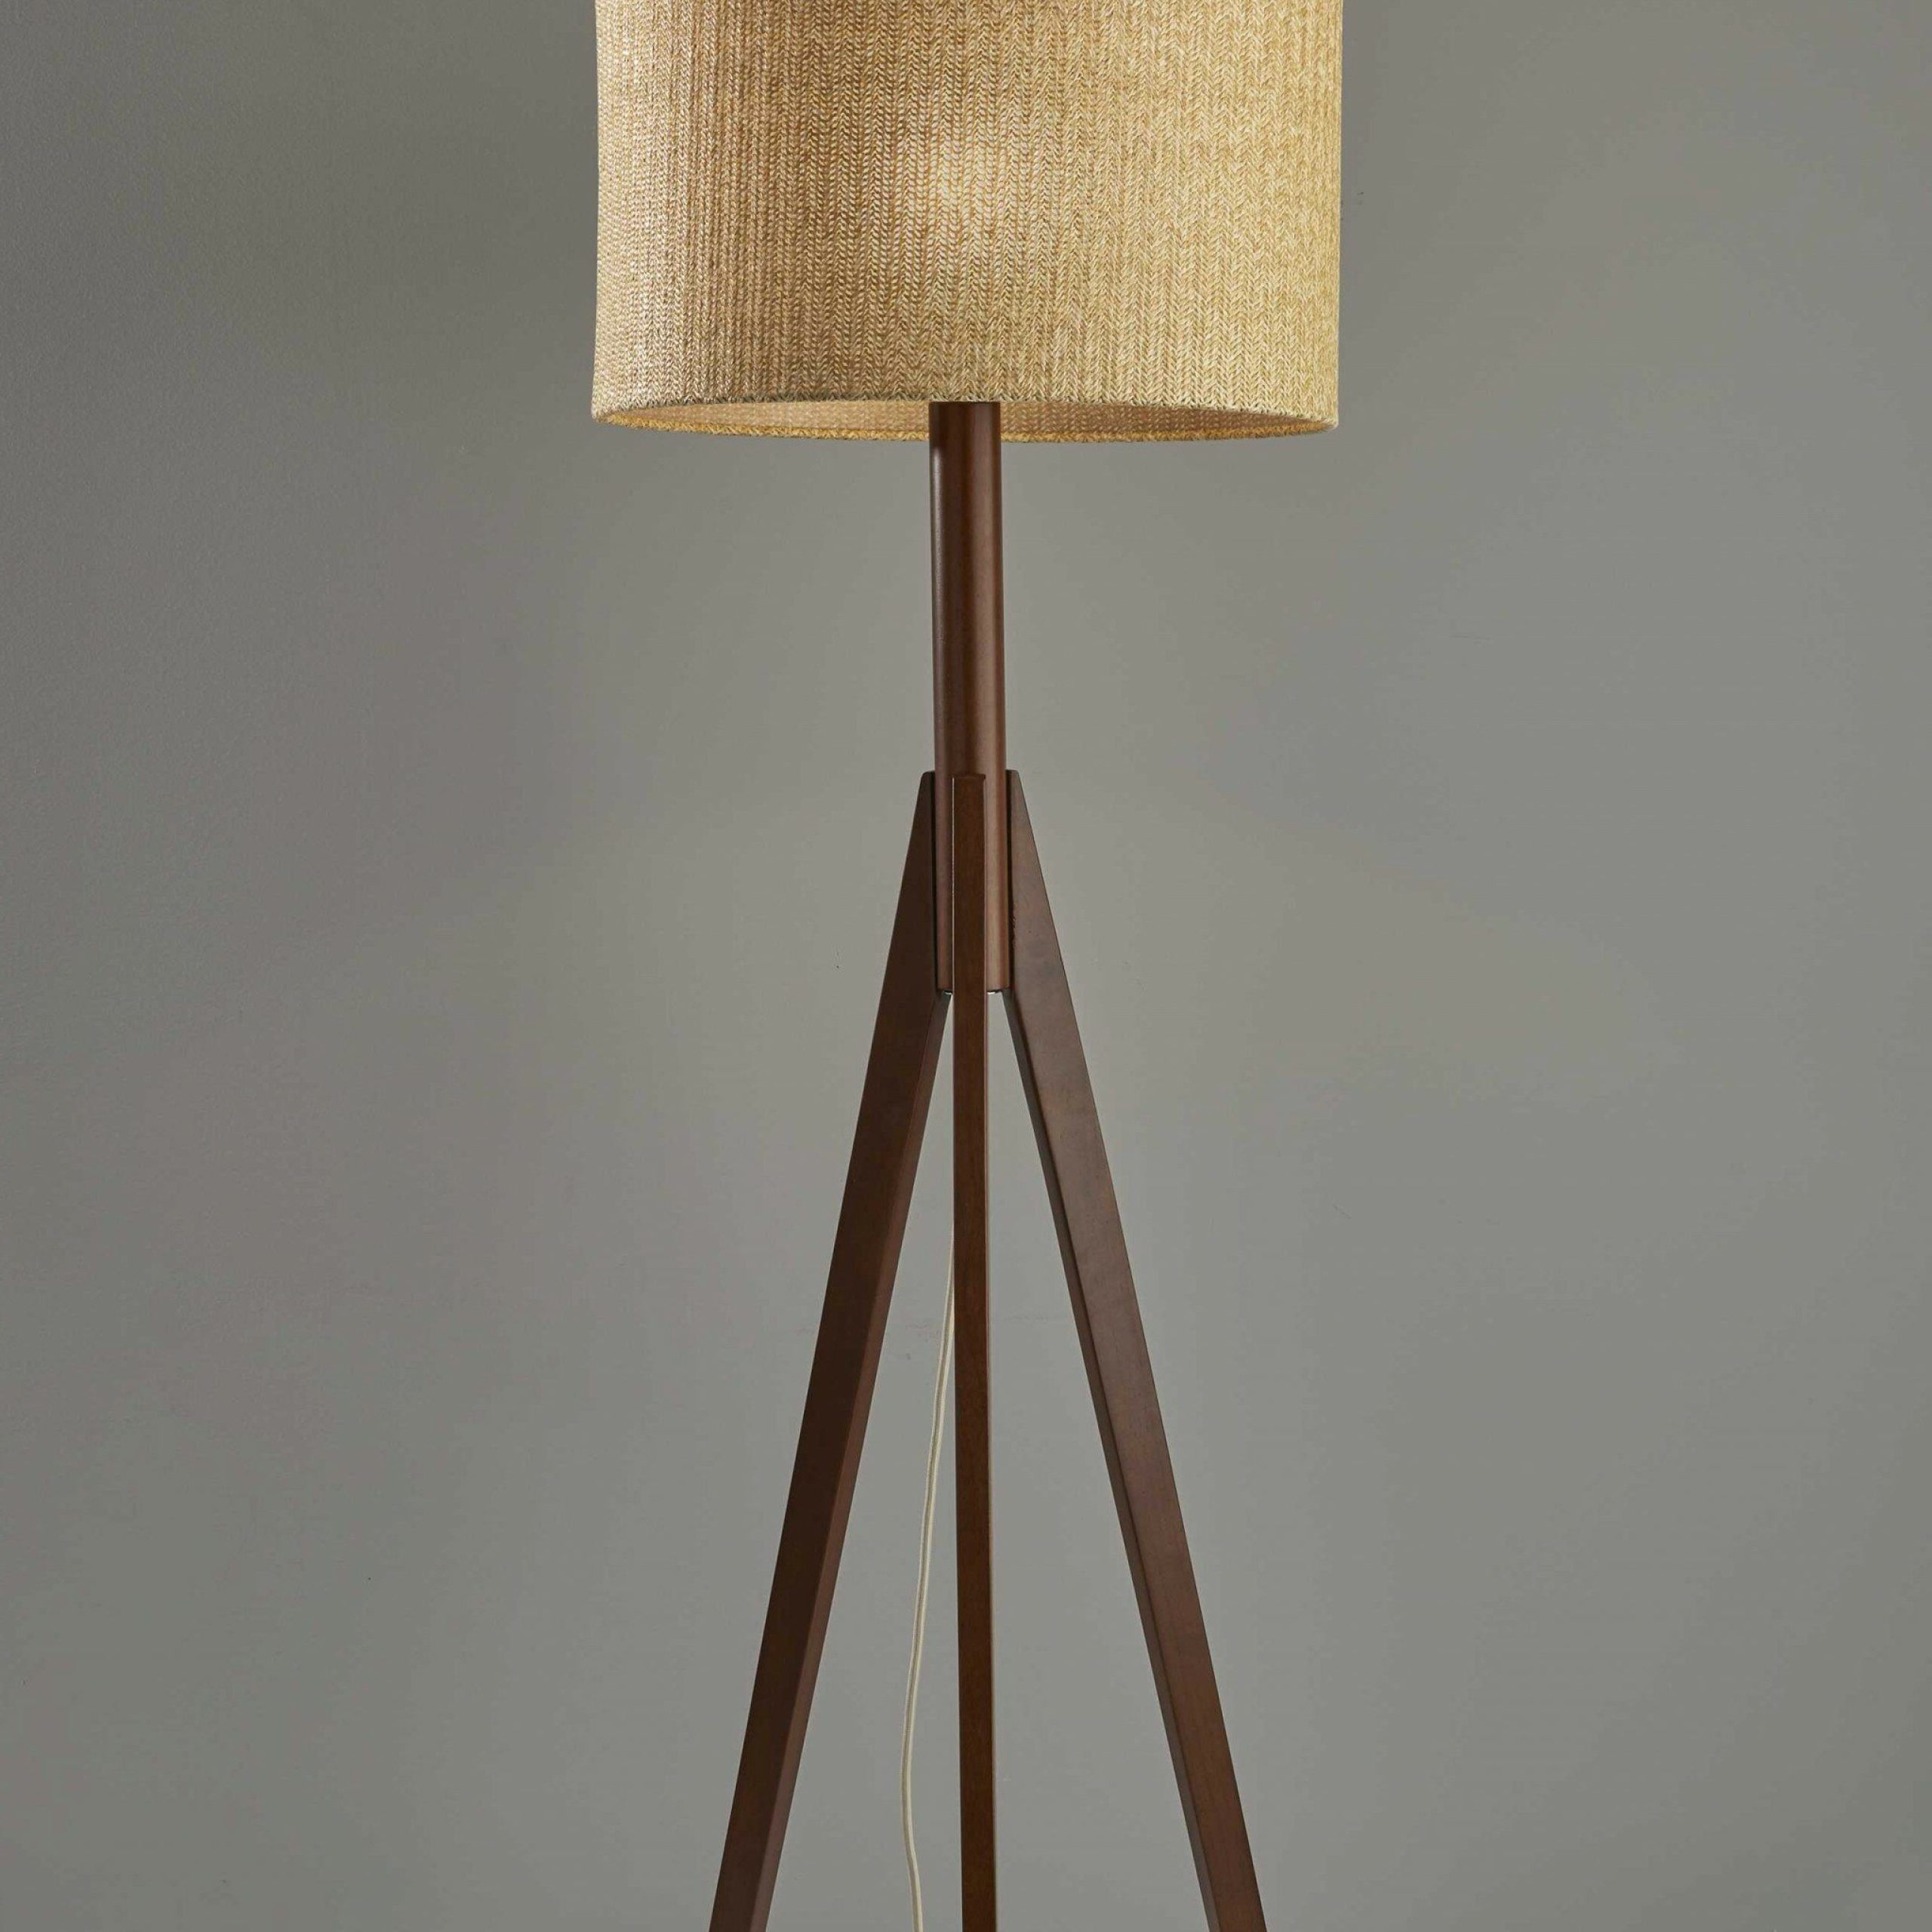 Corrigan Studio® Newland 59" Tripod Floor Lamp | Wayfair Intended For Rubberwood Floor Lamps (Gallery 19 of 20)